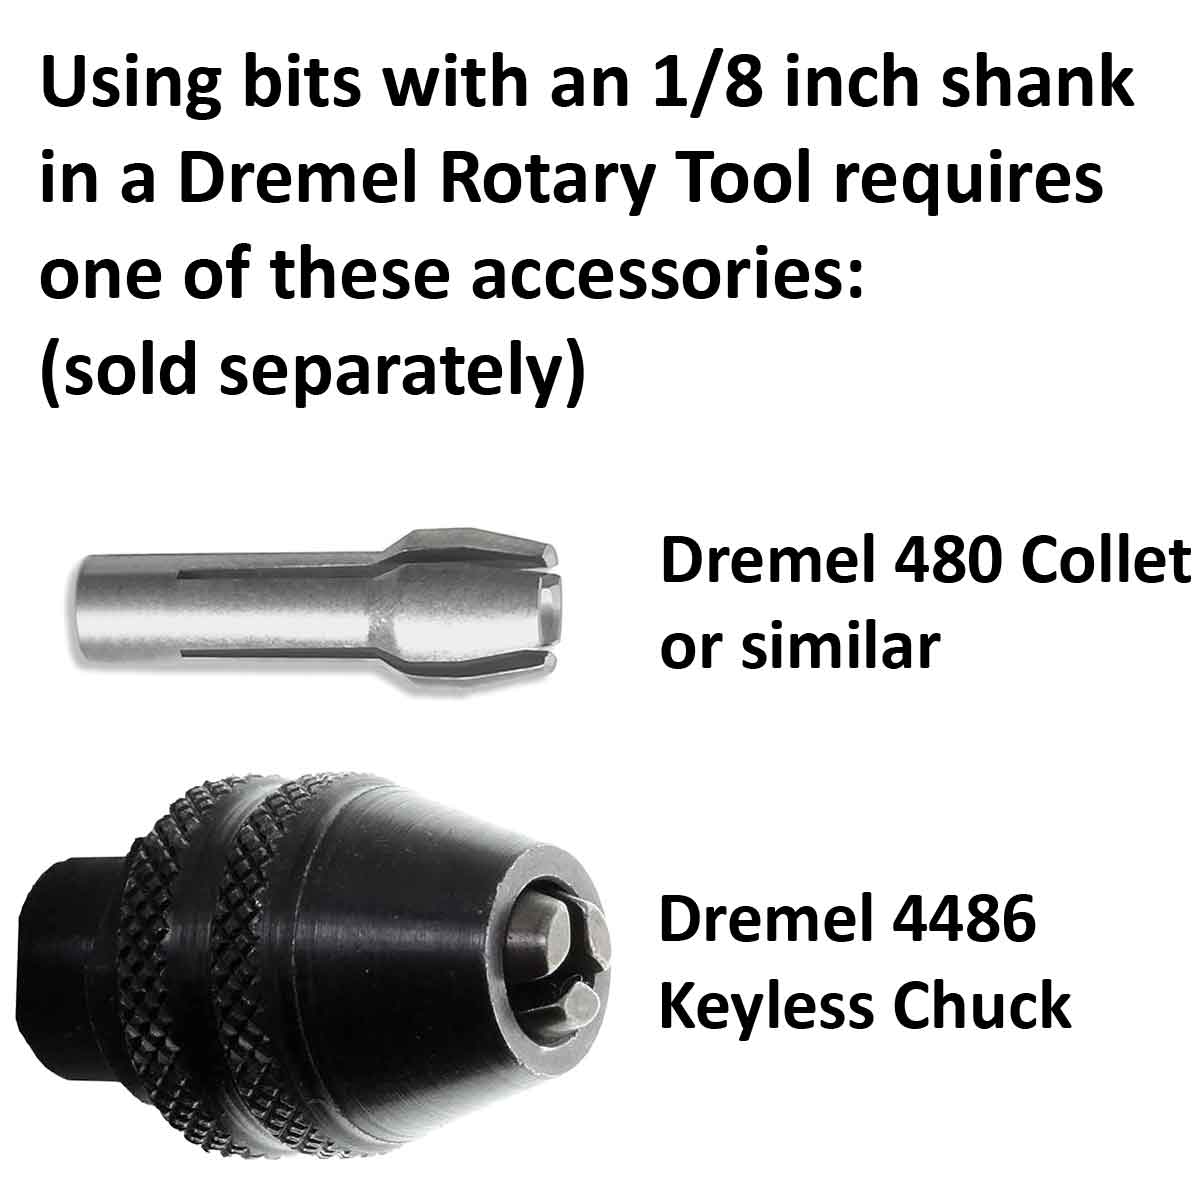 03.2mm - 1/8 x 7/16 inch Cone Diamond Burr - 1/8 inch shank